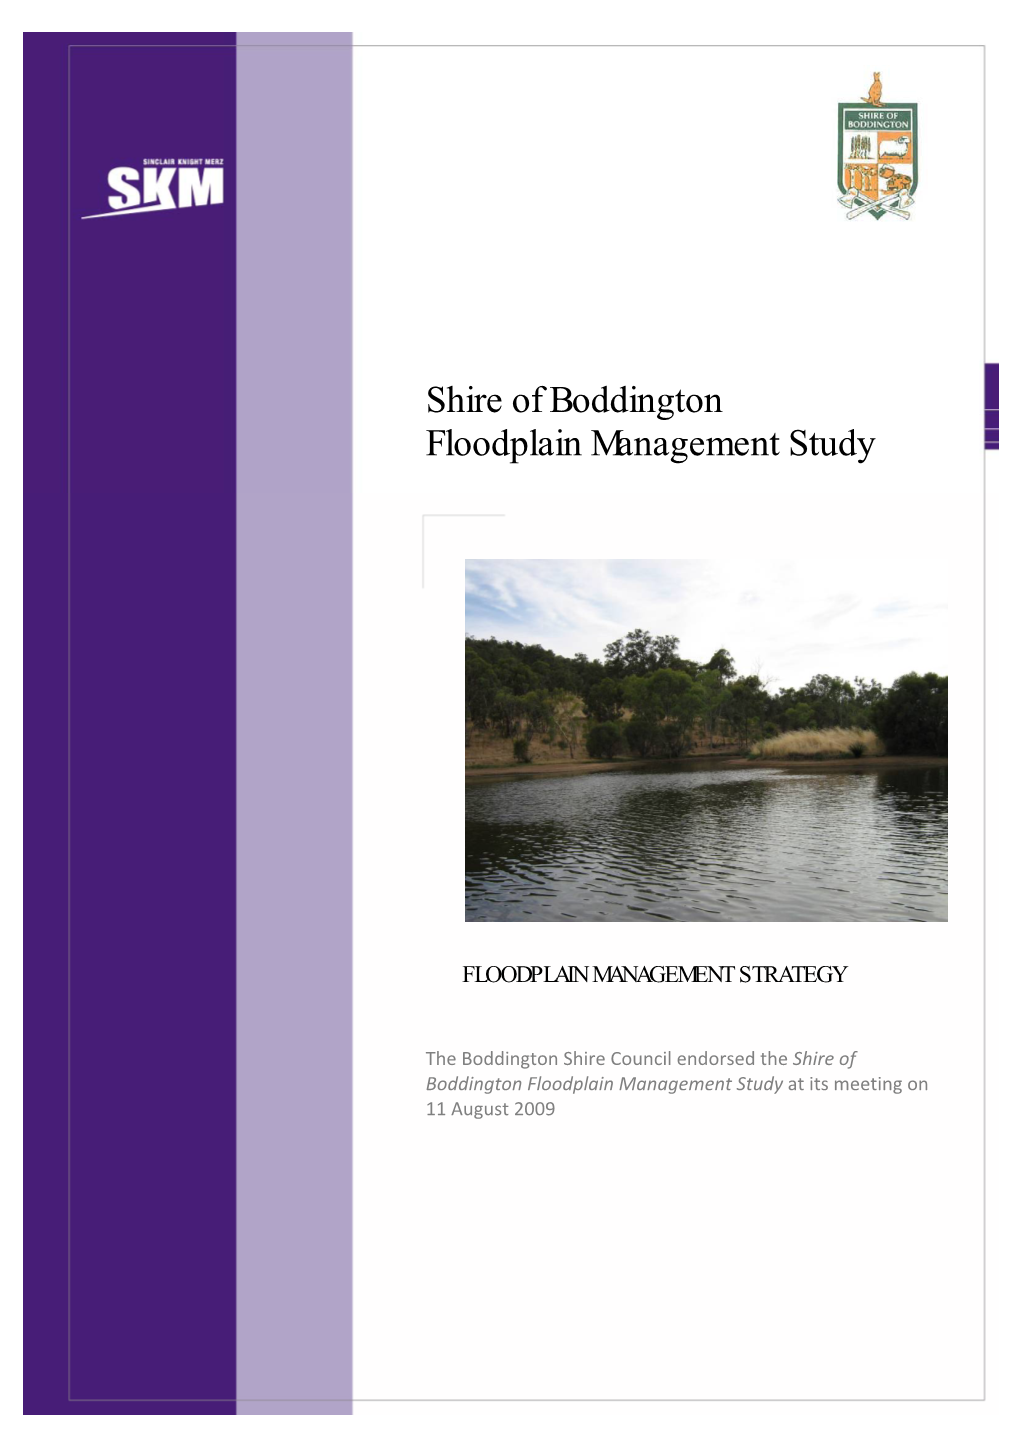 Serpentine Floodplain Management Study